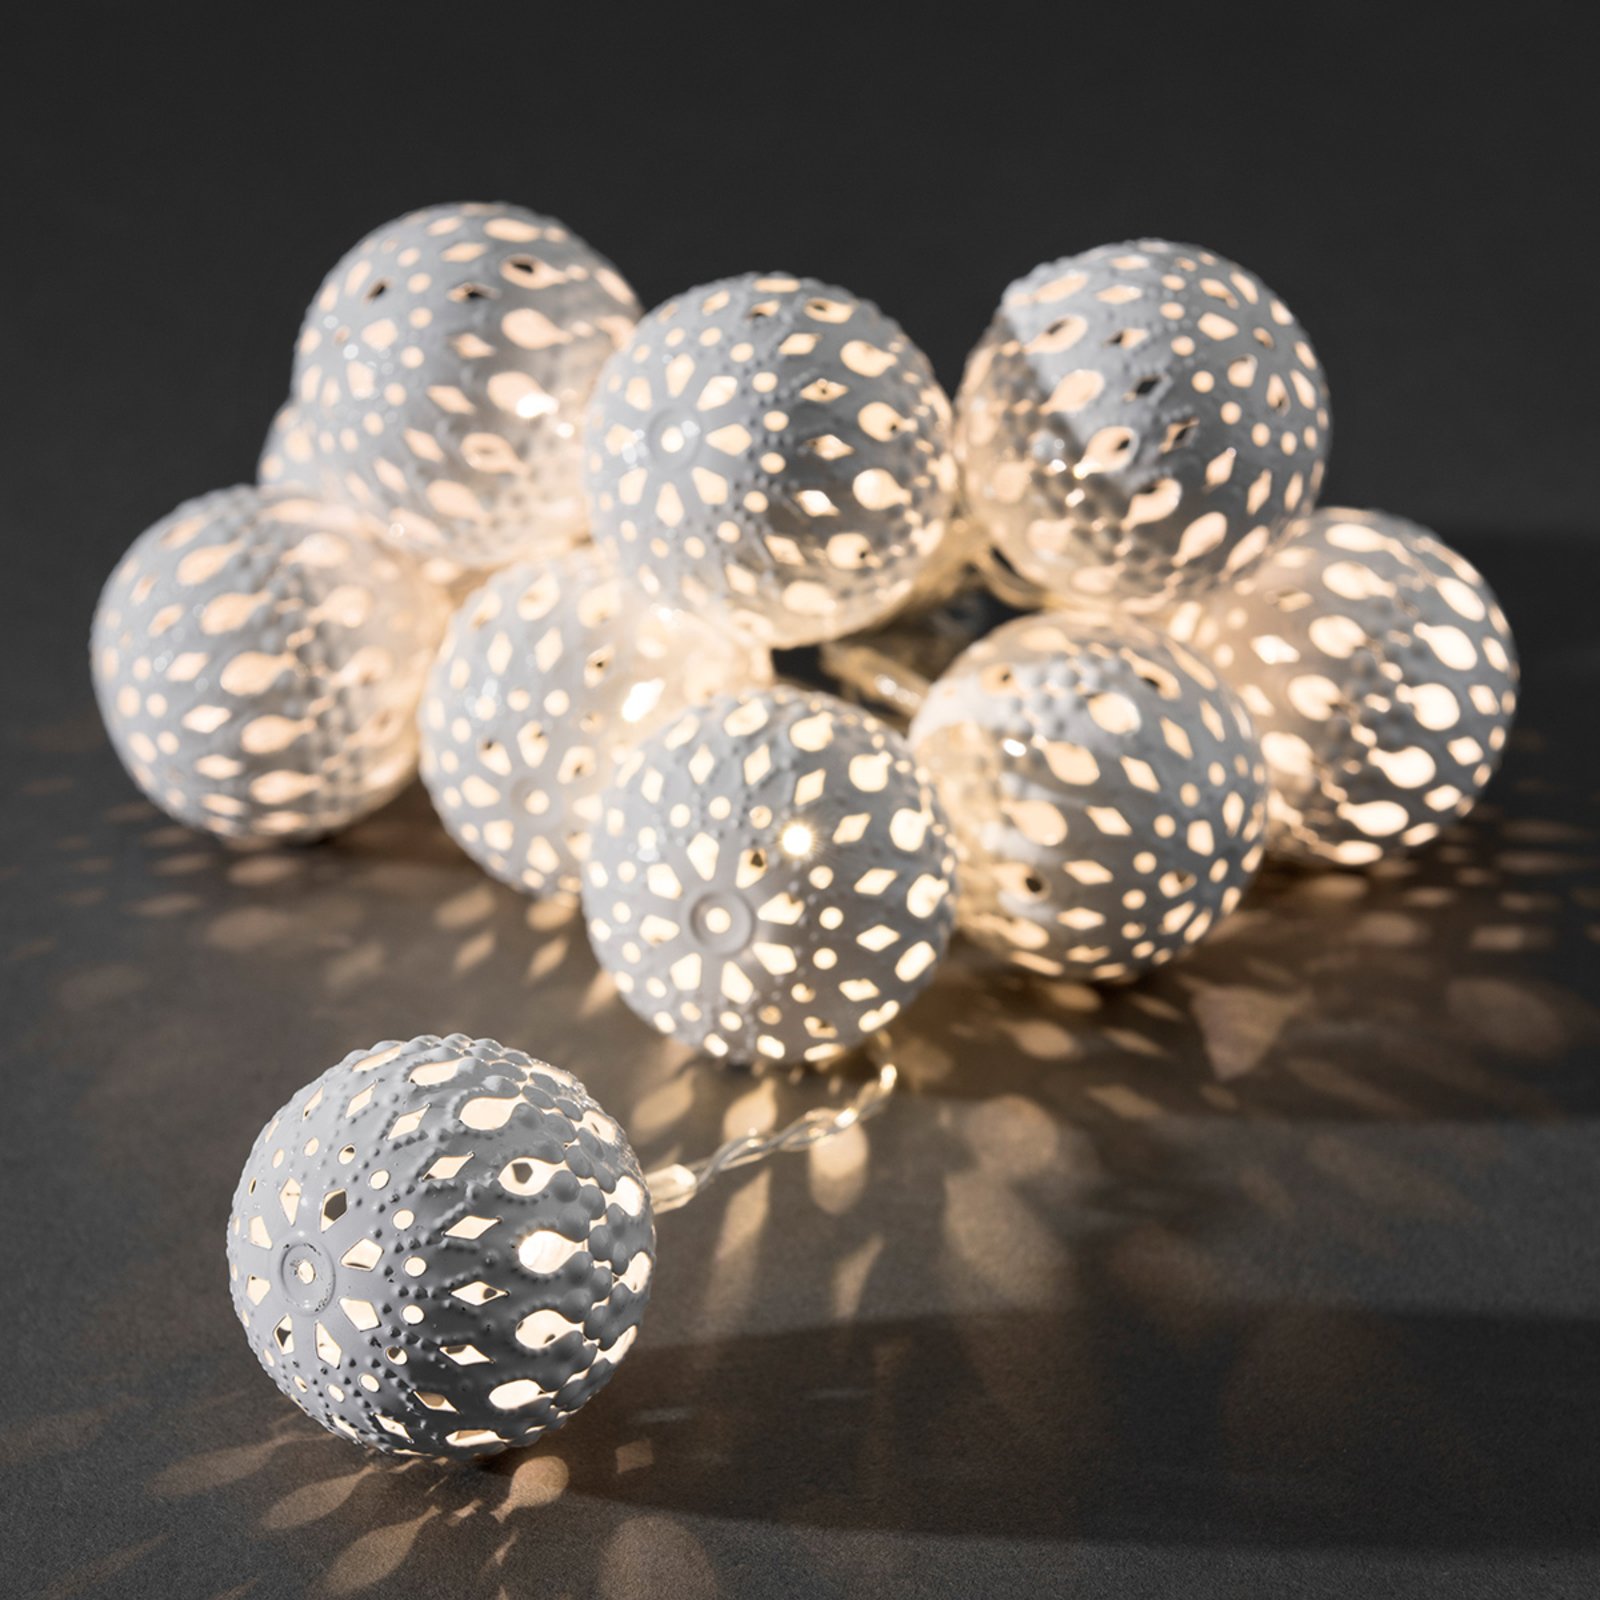 Guirlande lum. LED, boule métal, blanc, 10 lampes